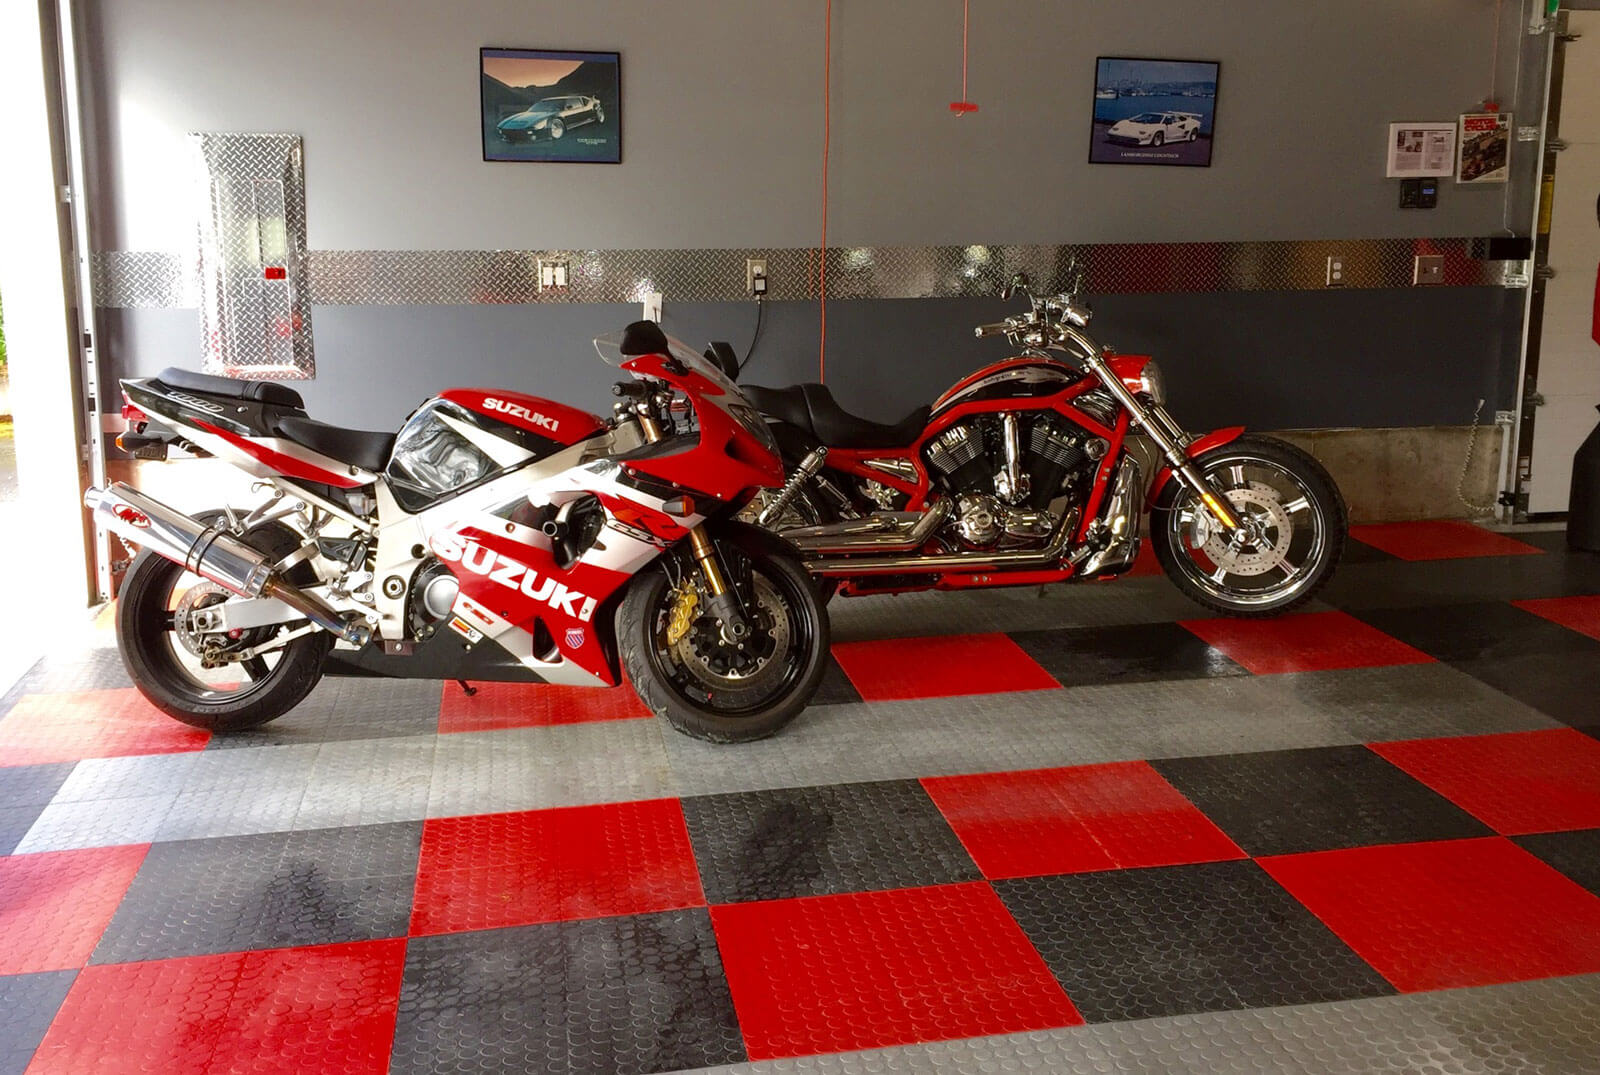 CircleTrac Garage with Suzuki Motorbikes